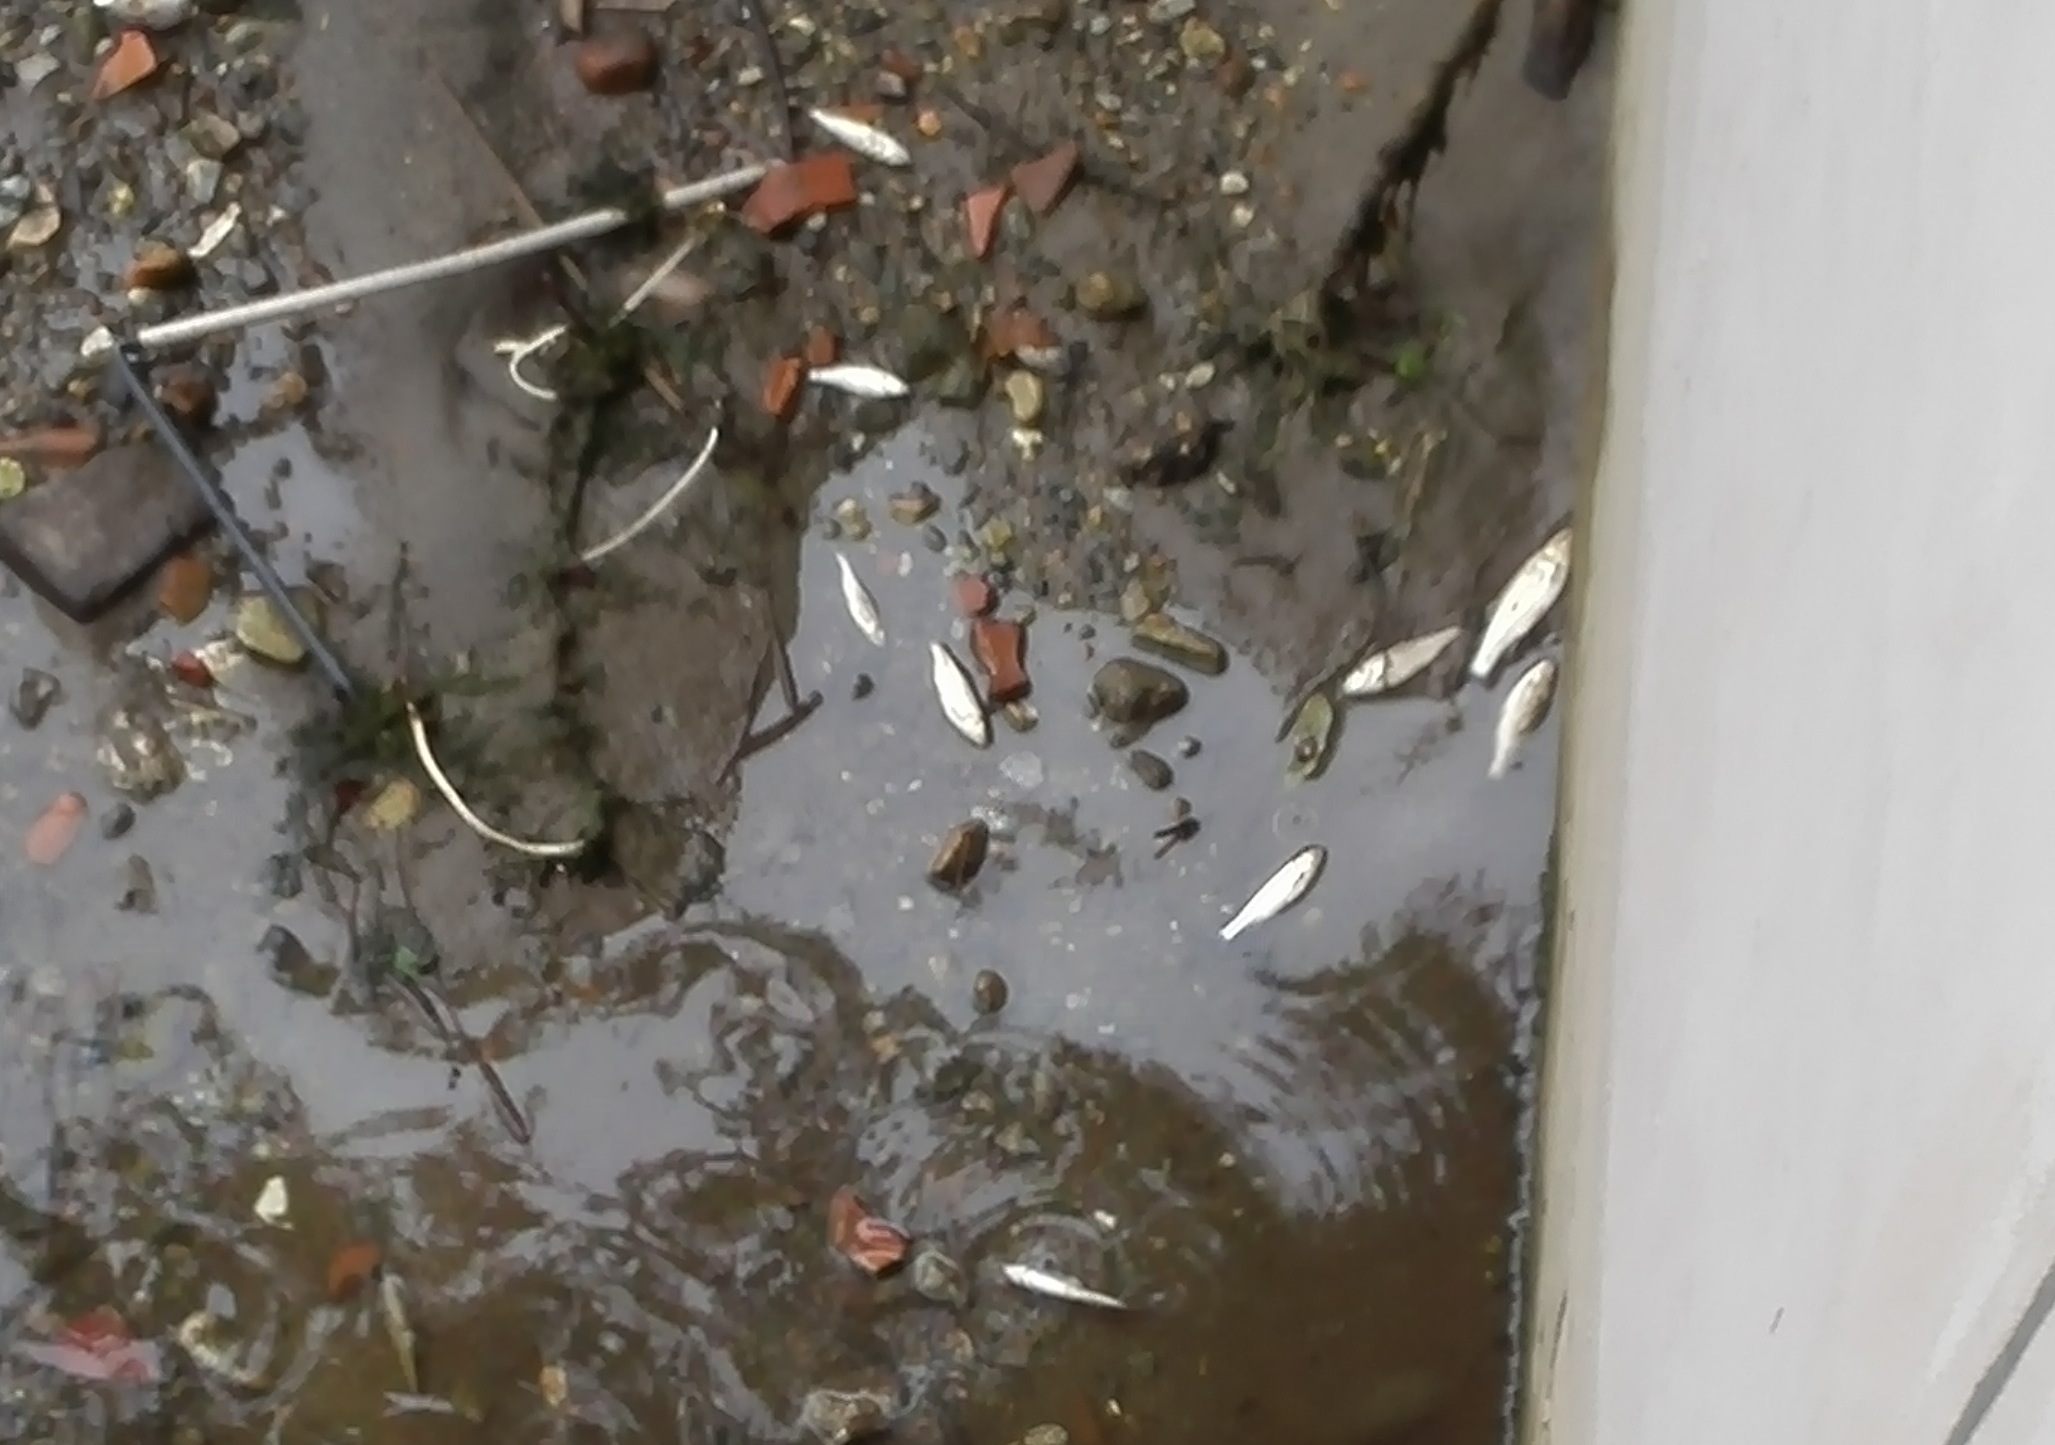 Pesci morti nel Seveso, è allarme inquinamento